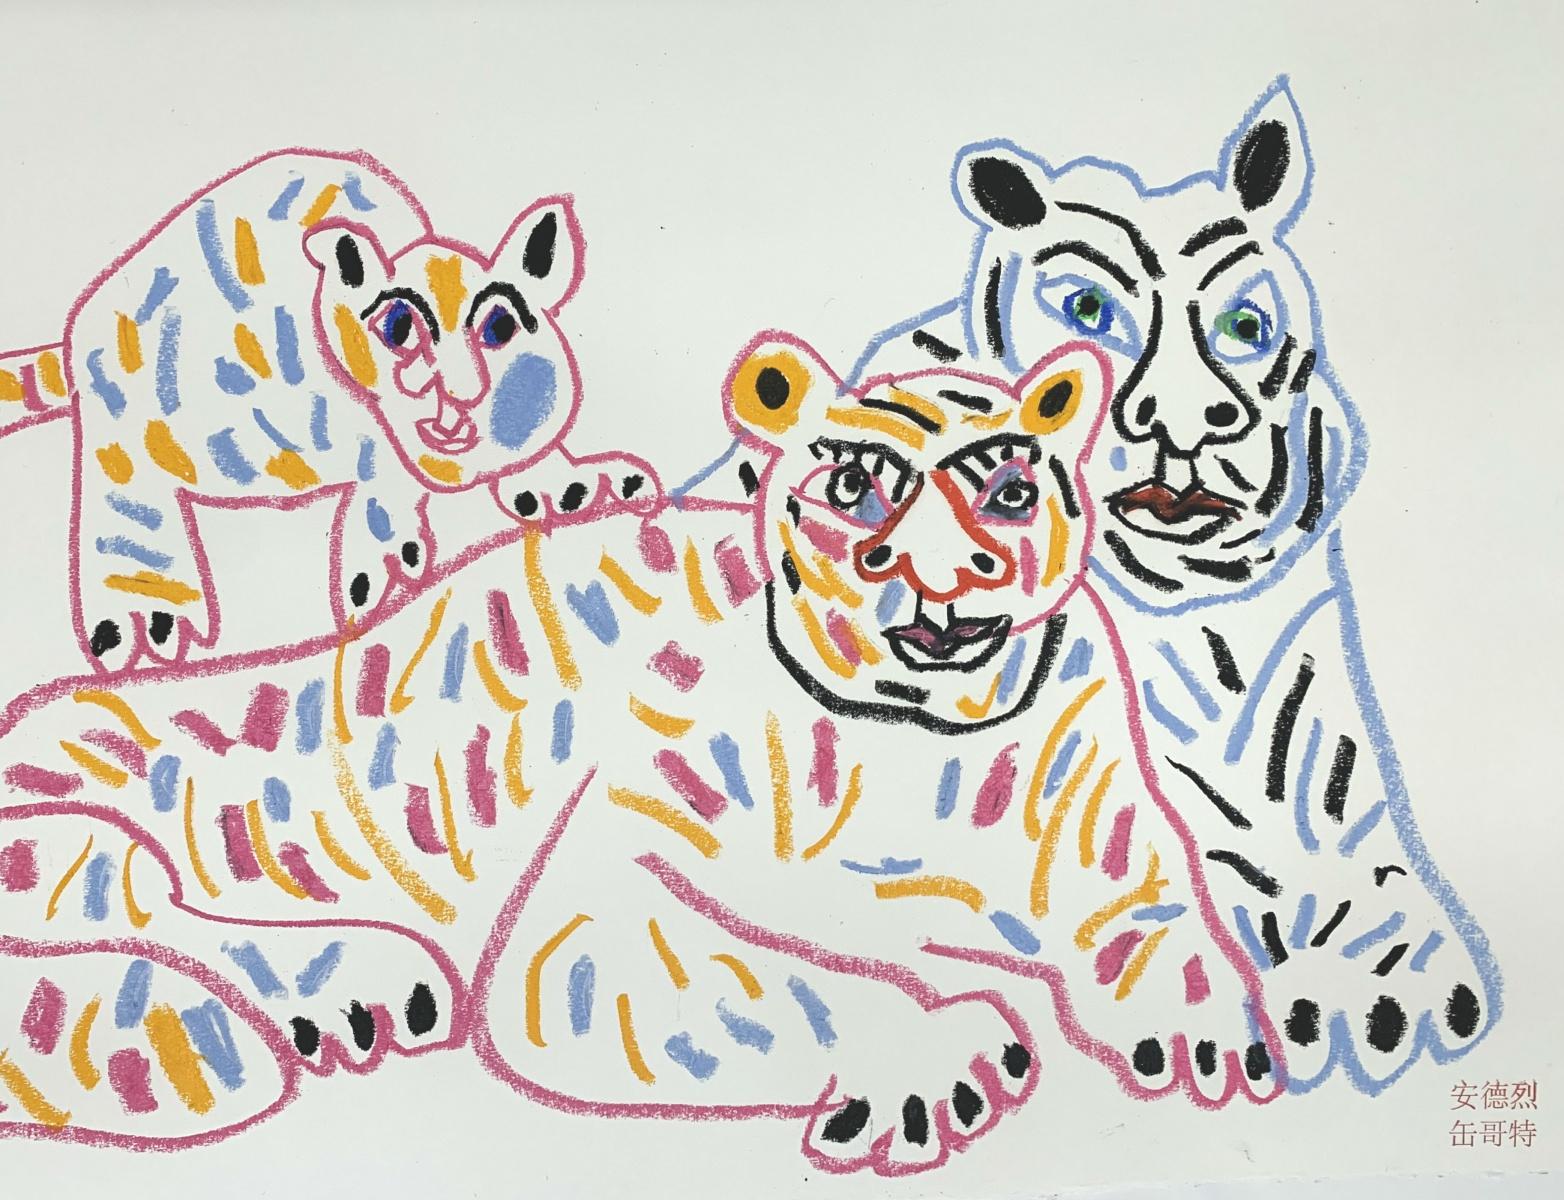 Tigres avec fils - Maître d'art polonais, pastels, animaux, signe du zodiaque chinois - Contemporain Painting par Andrzej Fogtt